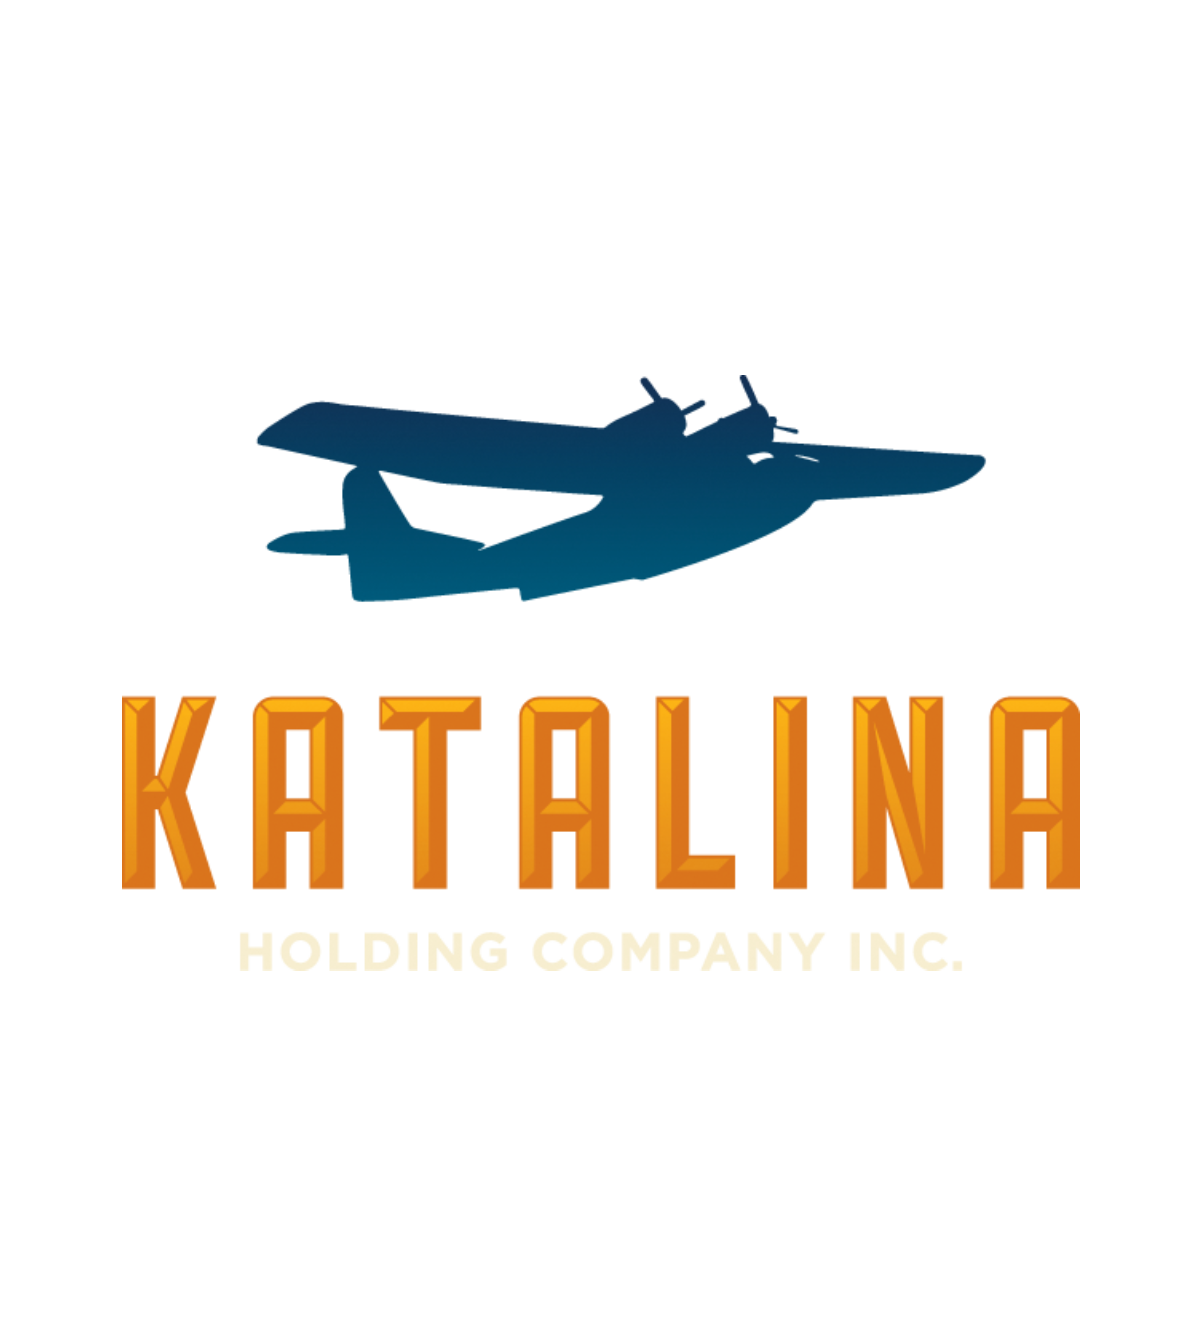 Katalina Holding Company